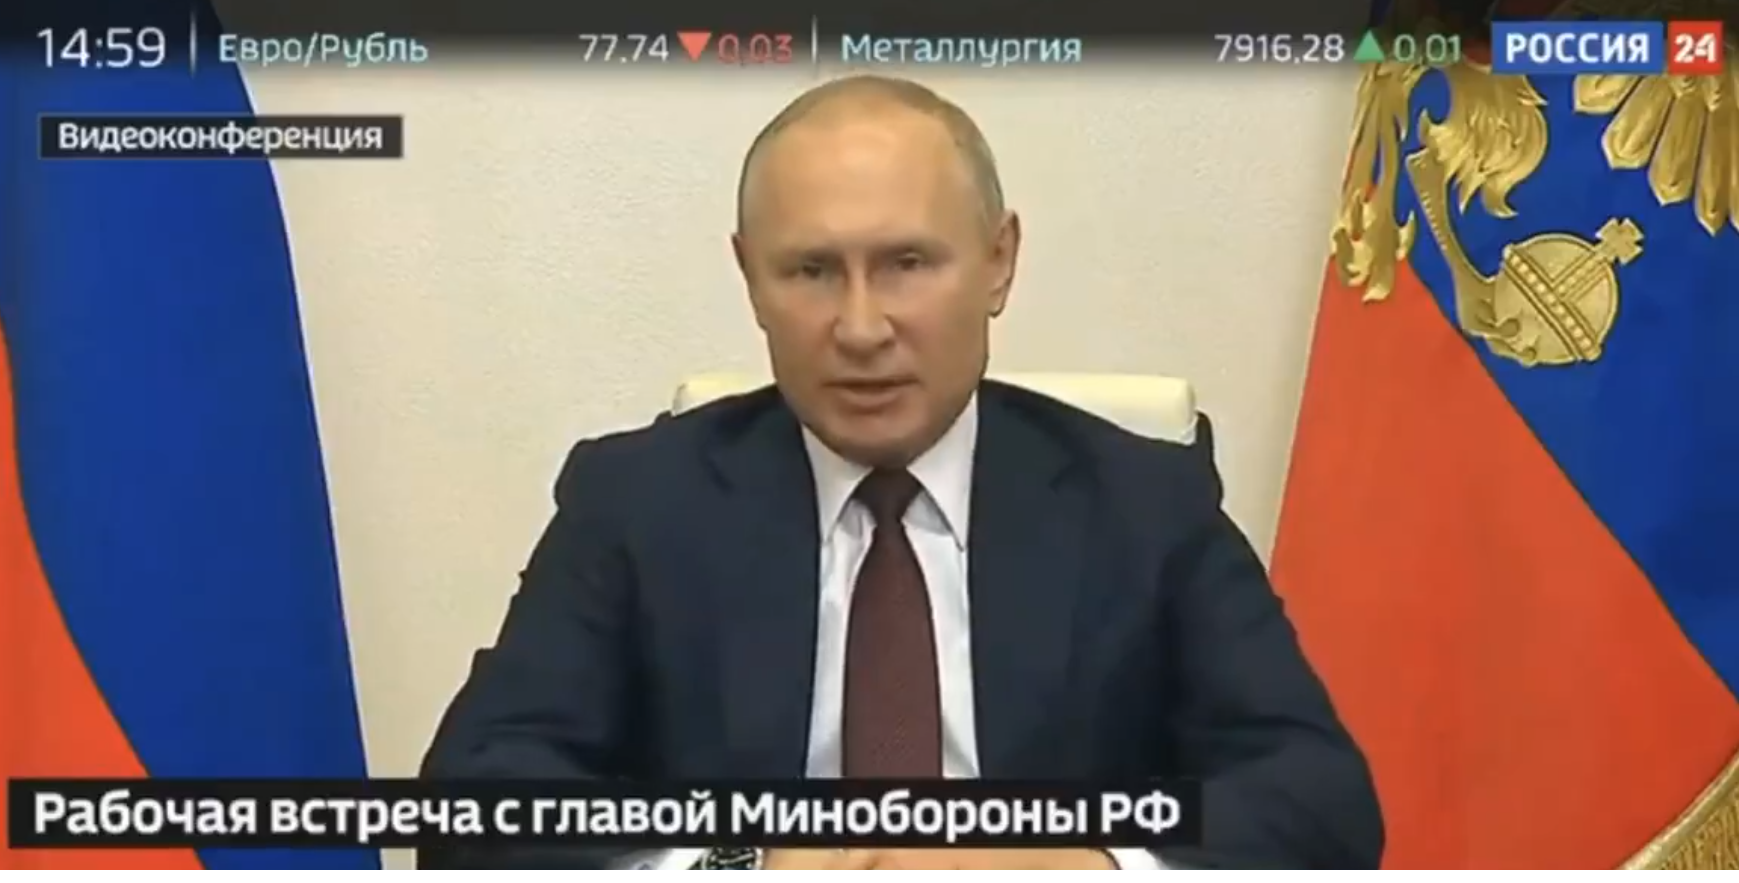 "Приказываю начать подготовку", - Путин экстренно отдал приказ Шойгу готовить российскую армию к 24 июня, видео